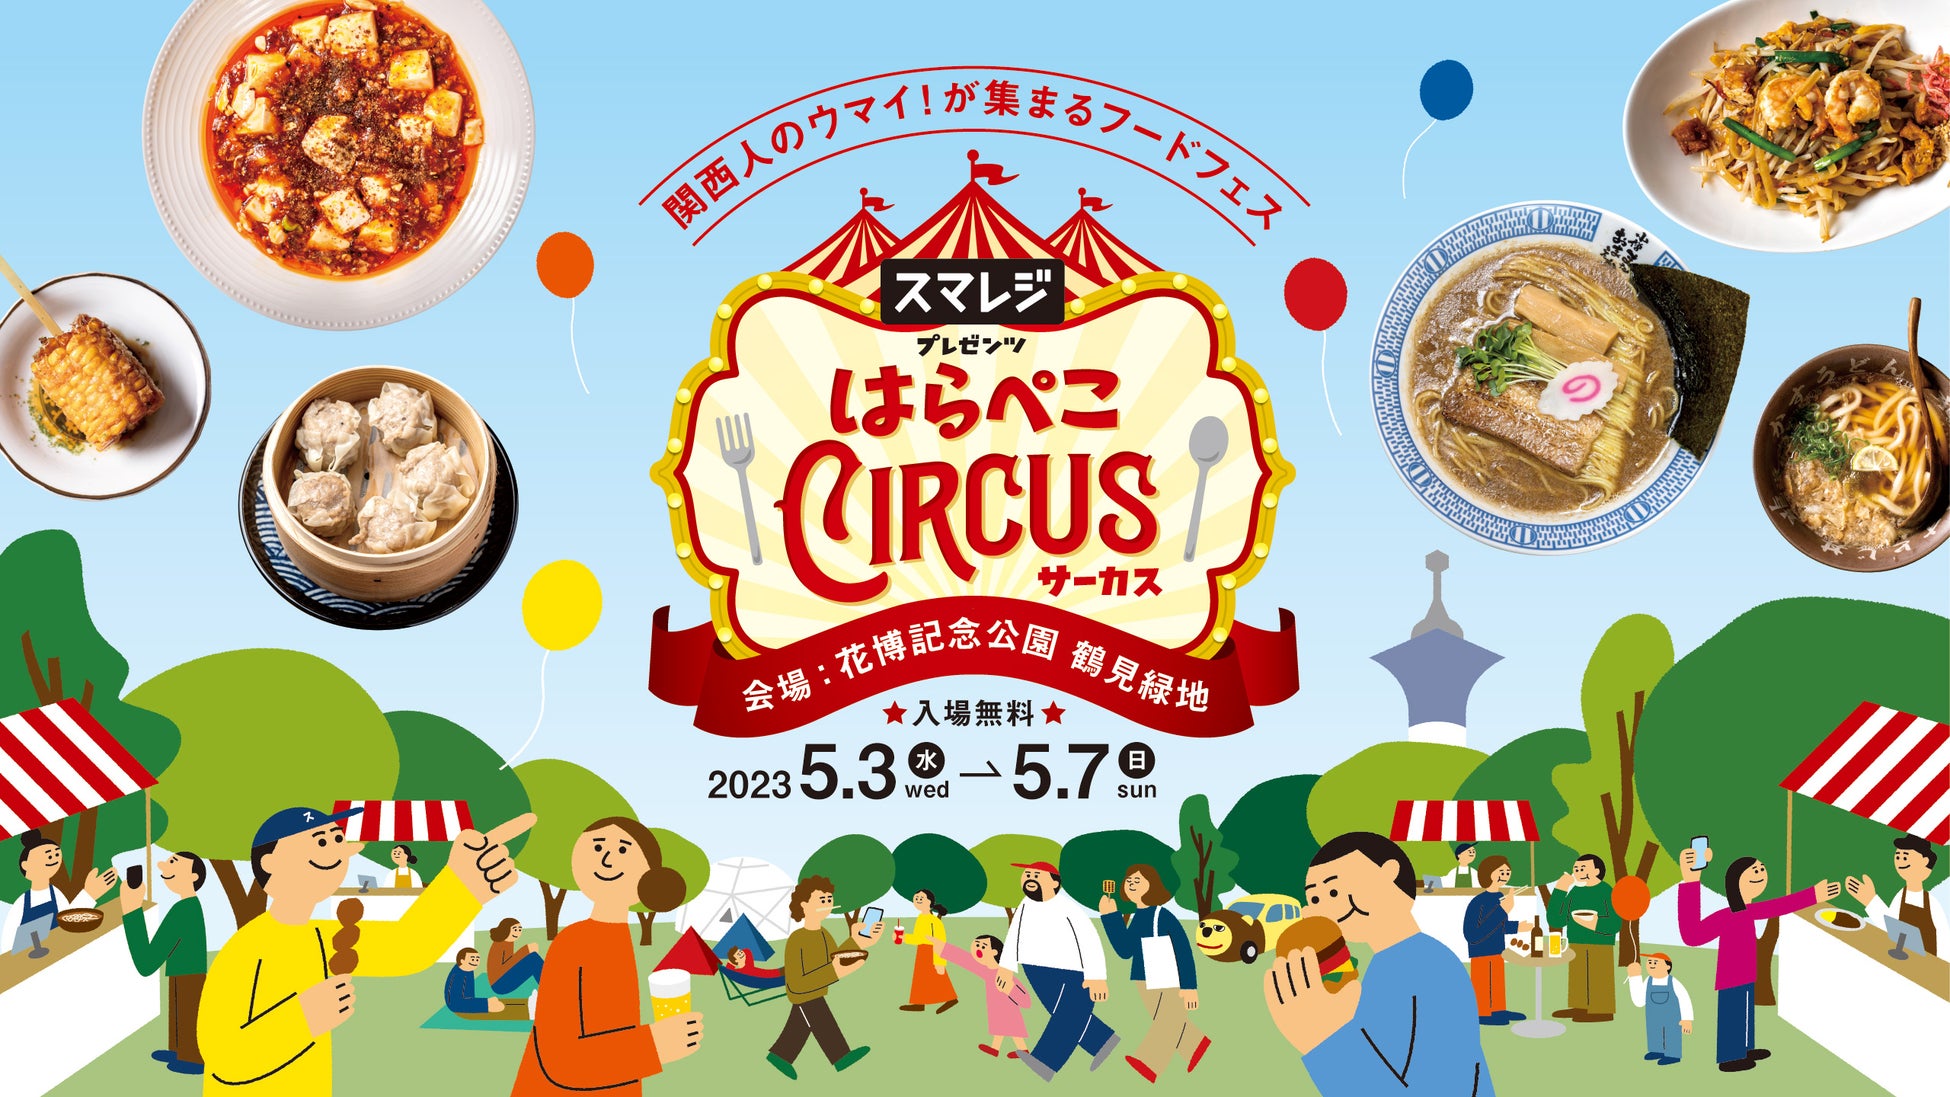 “日本で1番居心地の良いフードフェス”を目指す『スマレジ presents はらぺこCIRCUS 』